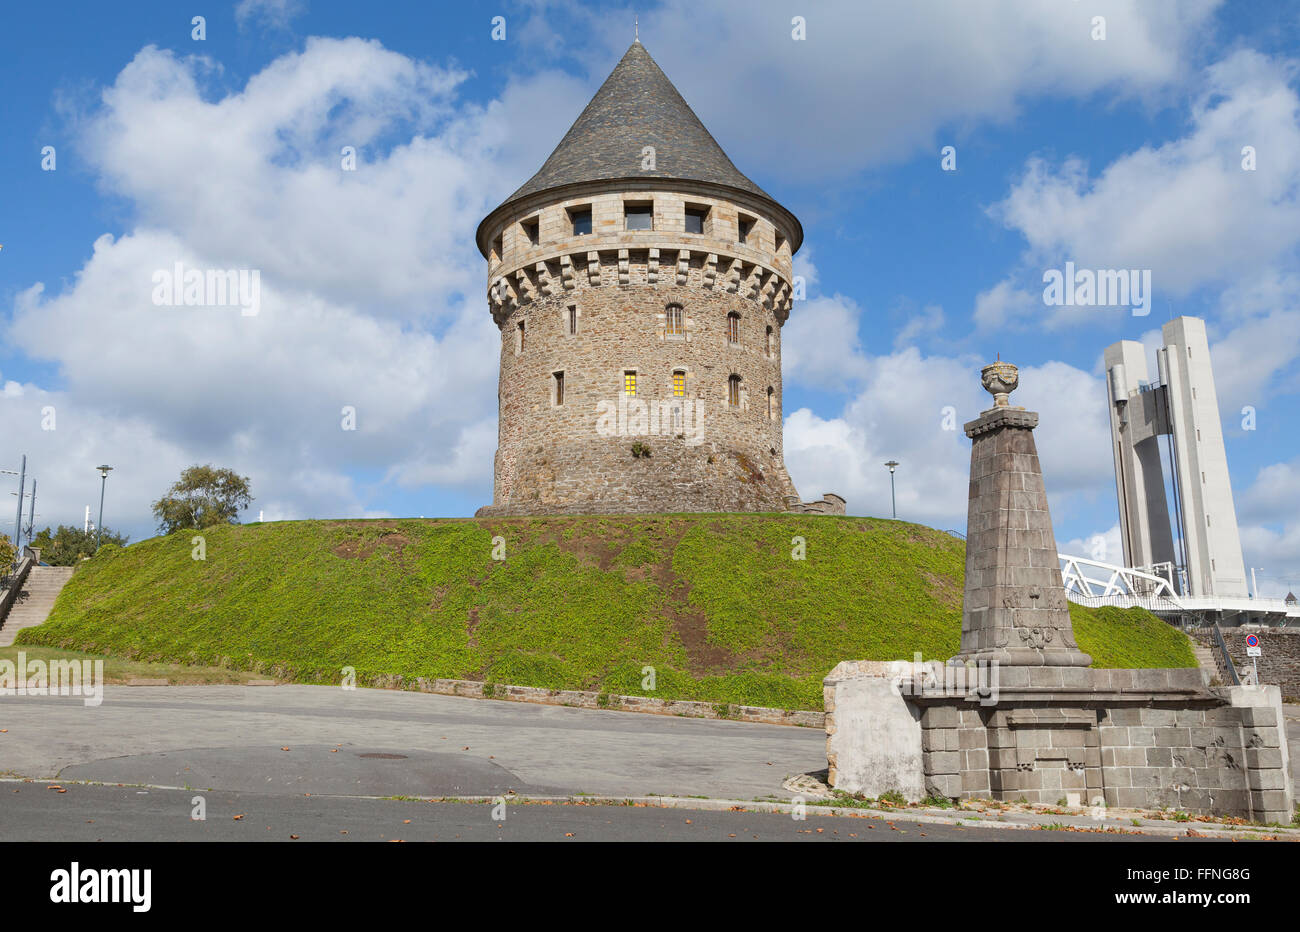 Historischen Tanguy Turm (Tour Tanguy) - eines der ältesten Denkmäler in Brest, Bretagne, Frankreich Stockfoto